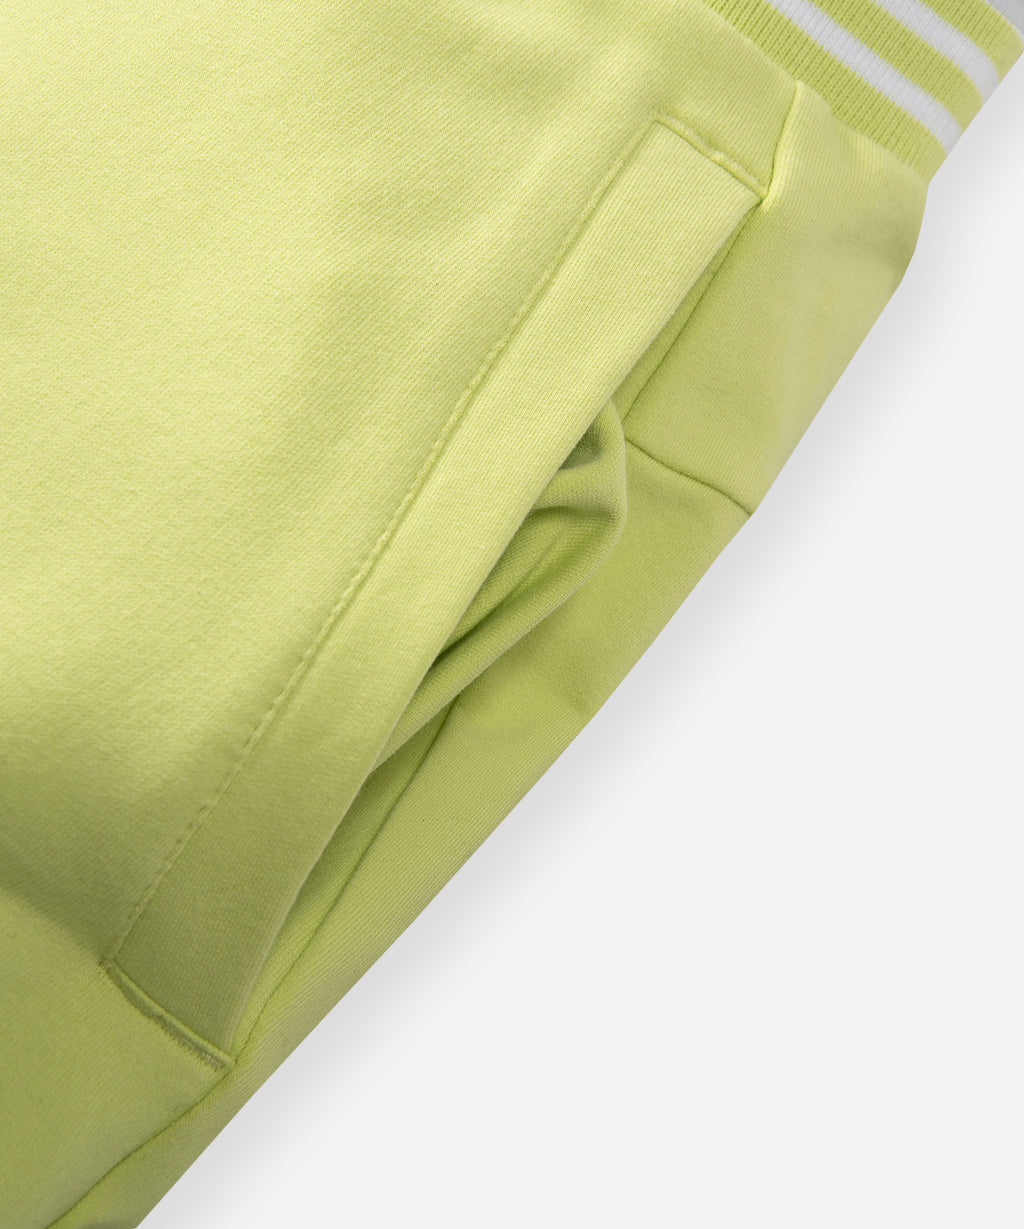  On-seam front welt pocket on Paper Planes Gusset Short color Lime Sherbet.